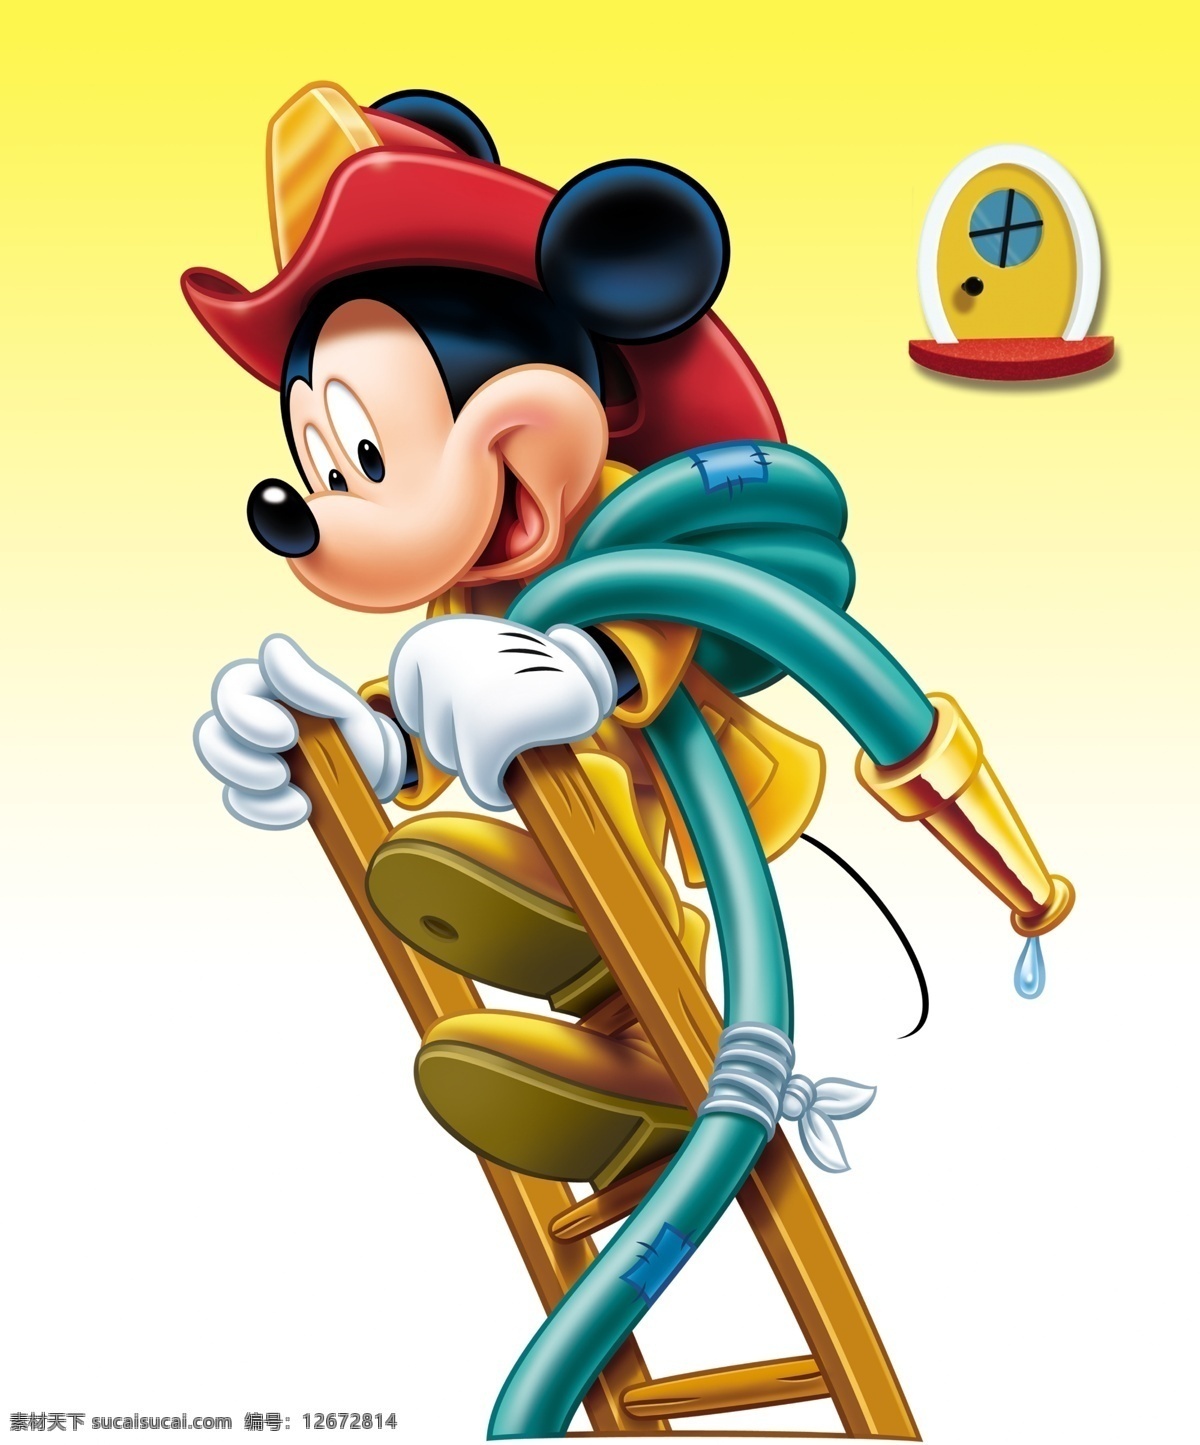 迪士尼 米奇 卡通 楼梯 门 米老鼠 水滴 水管 水珠 梯子 米老鼠的图片 爬梯 psd源文件